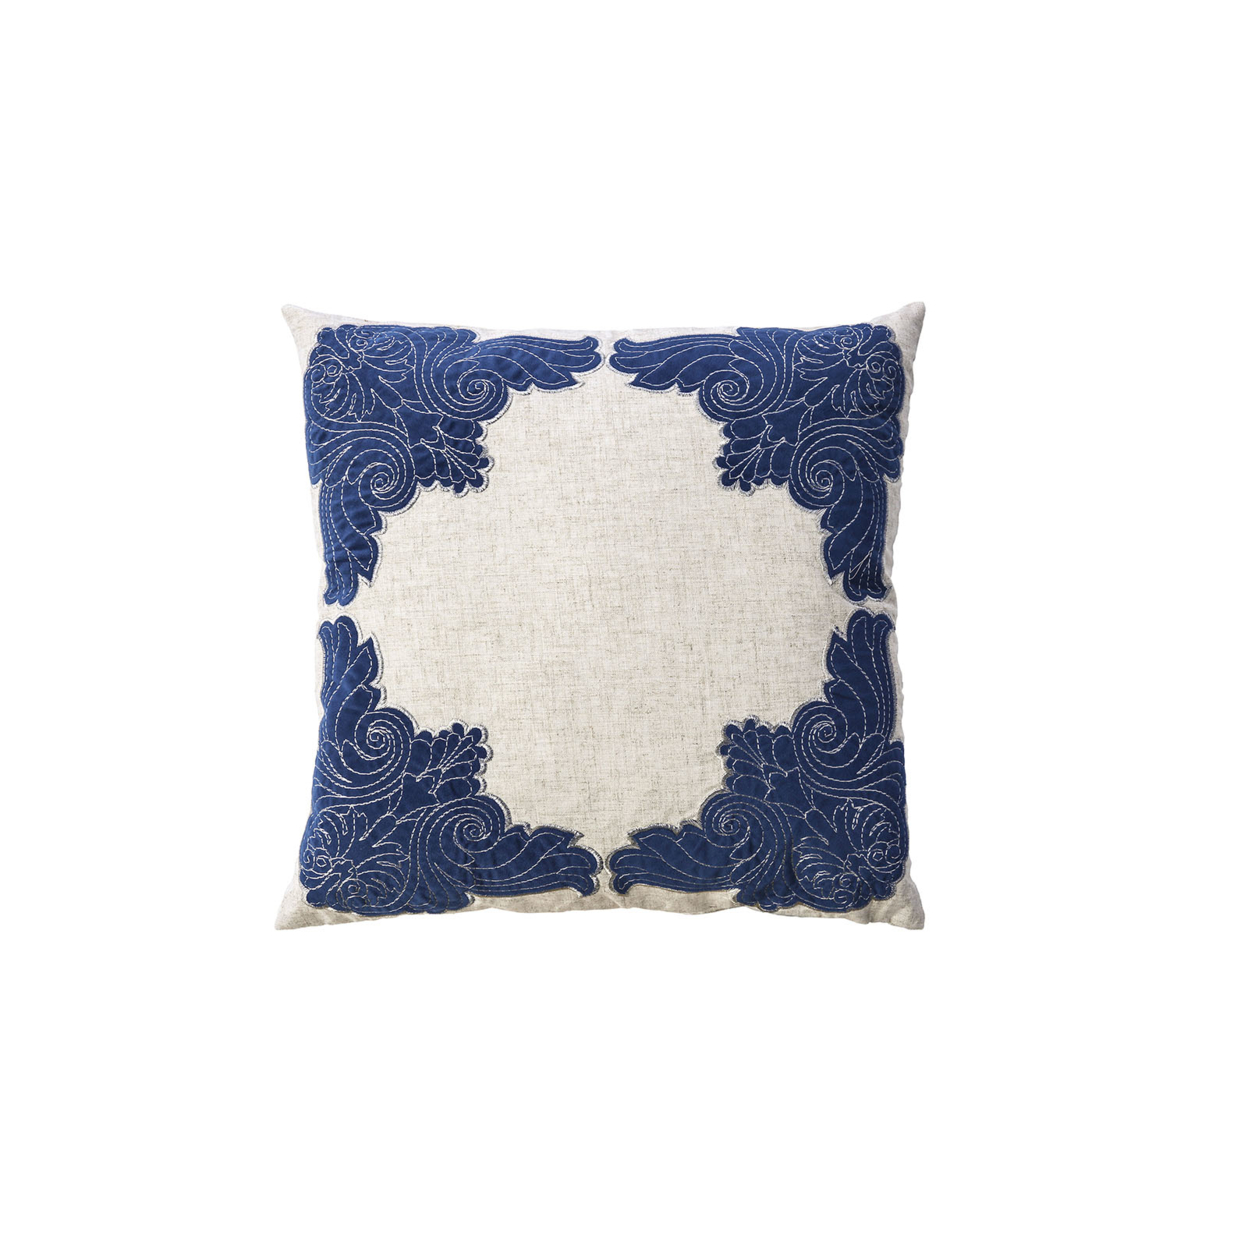 Contemporary Style Floral, Baroque Borders Set Of 2 Throw Pillows, Indigo Blue- Saltoro Sherpi